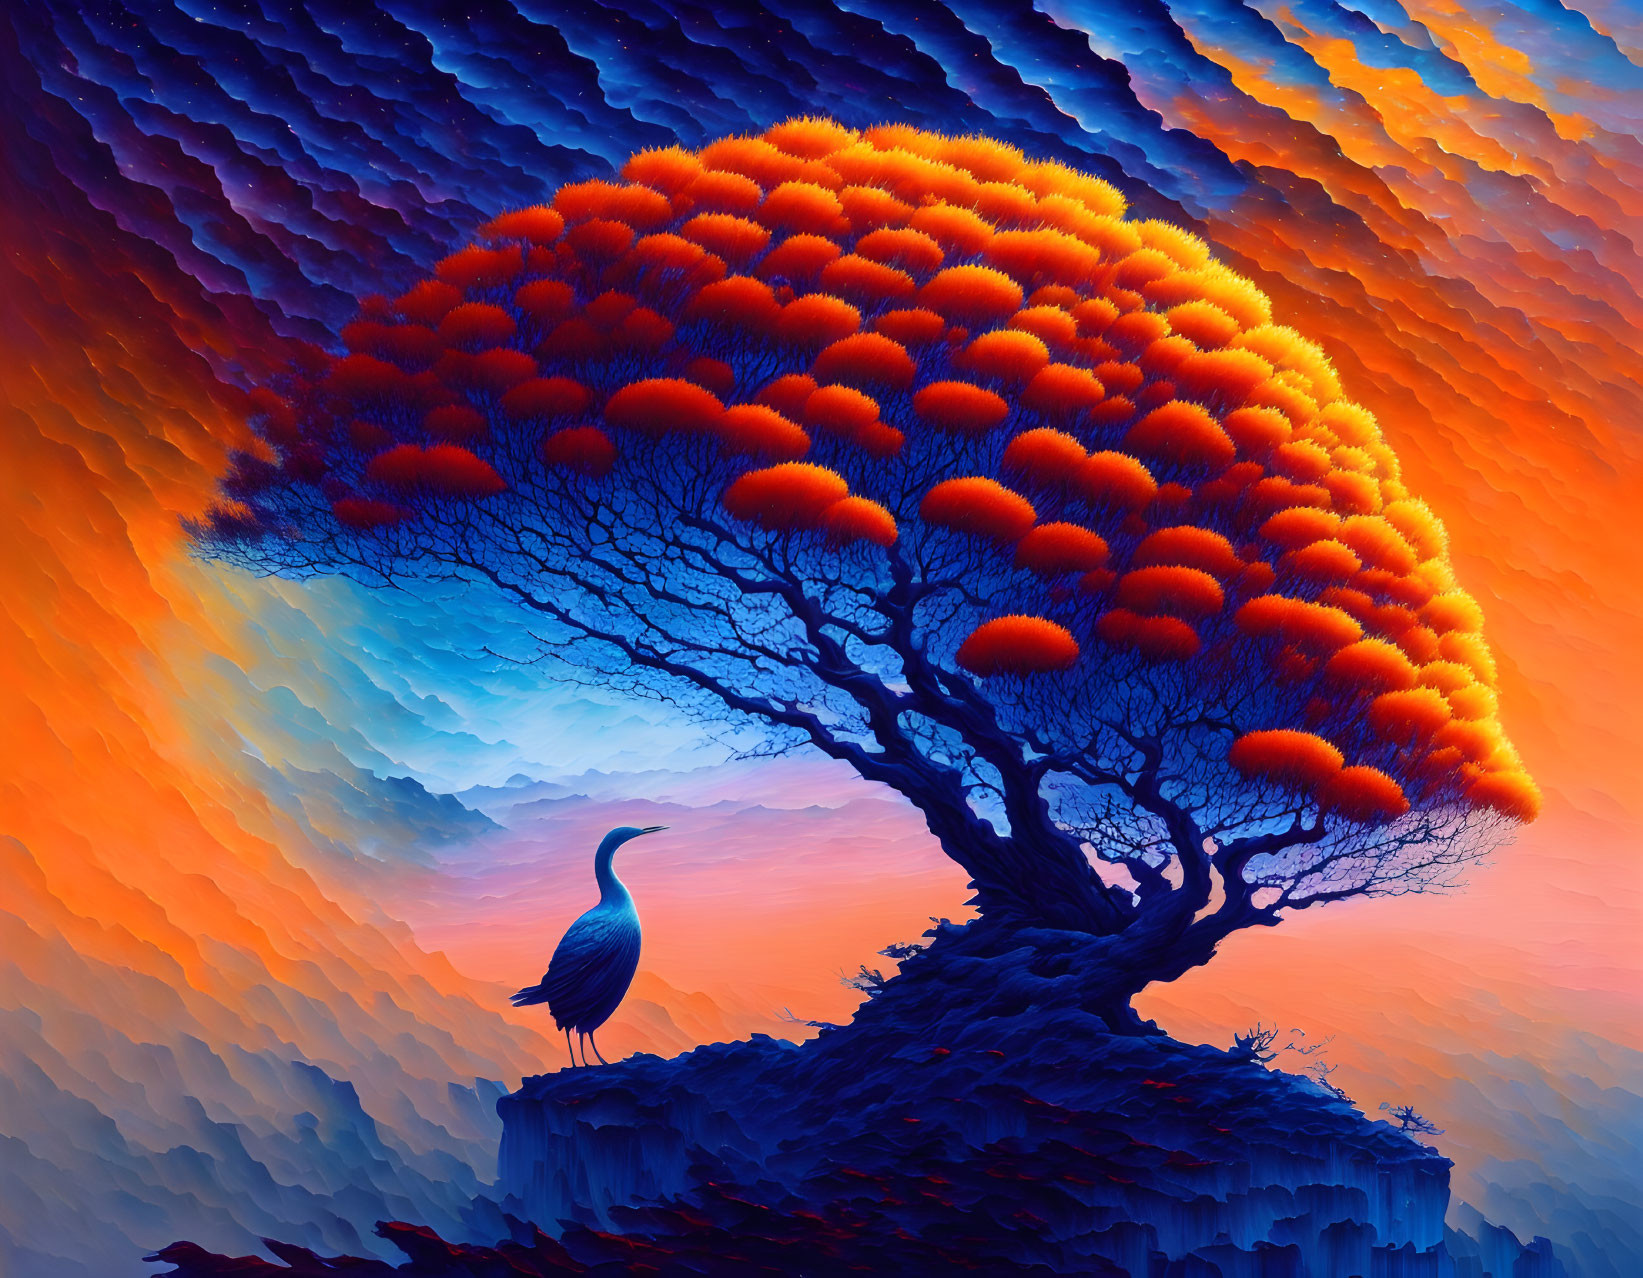 Colorful Artwork: Large Tree, Orange Foliage, Bird on Rock, Blue-Orange